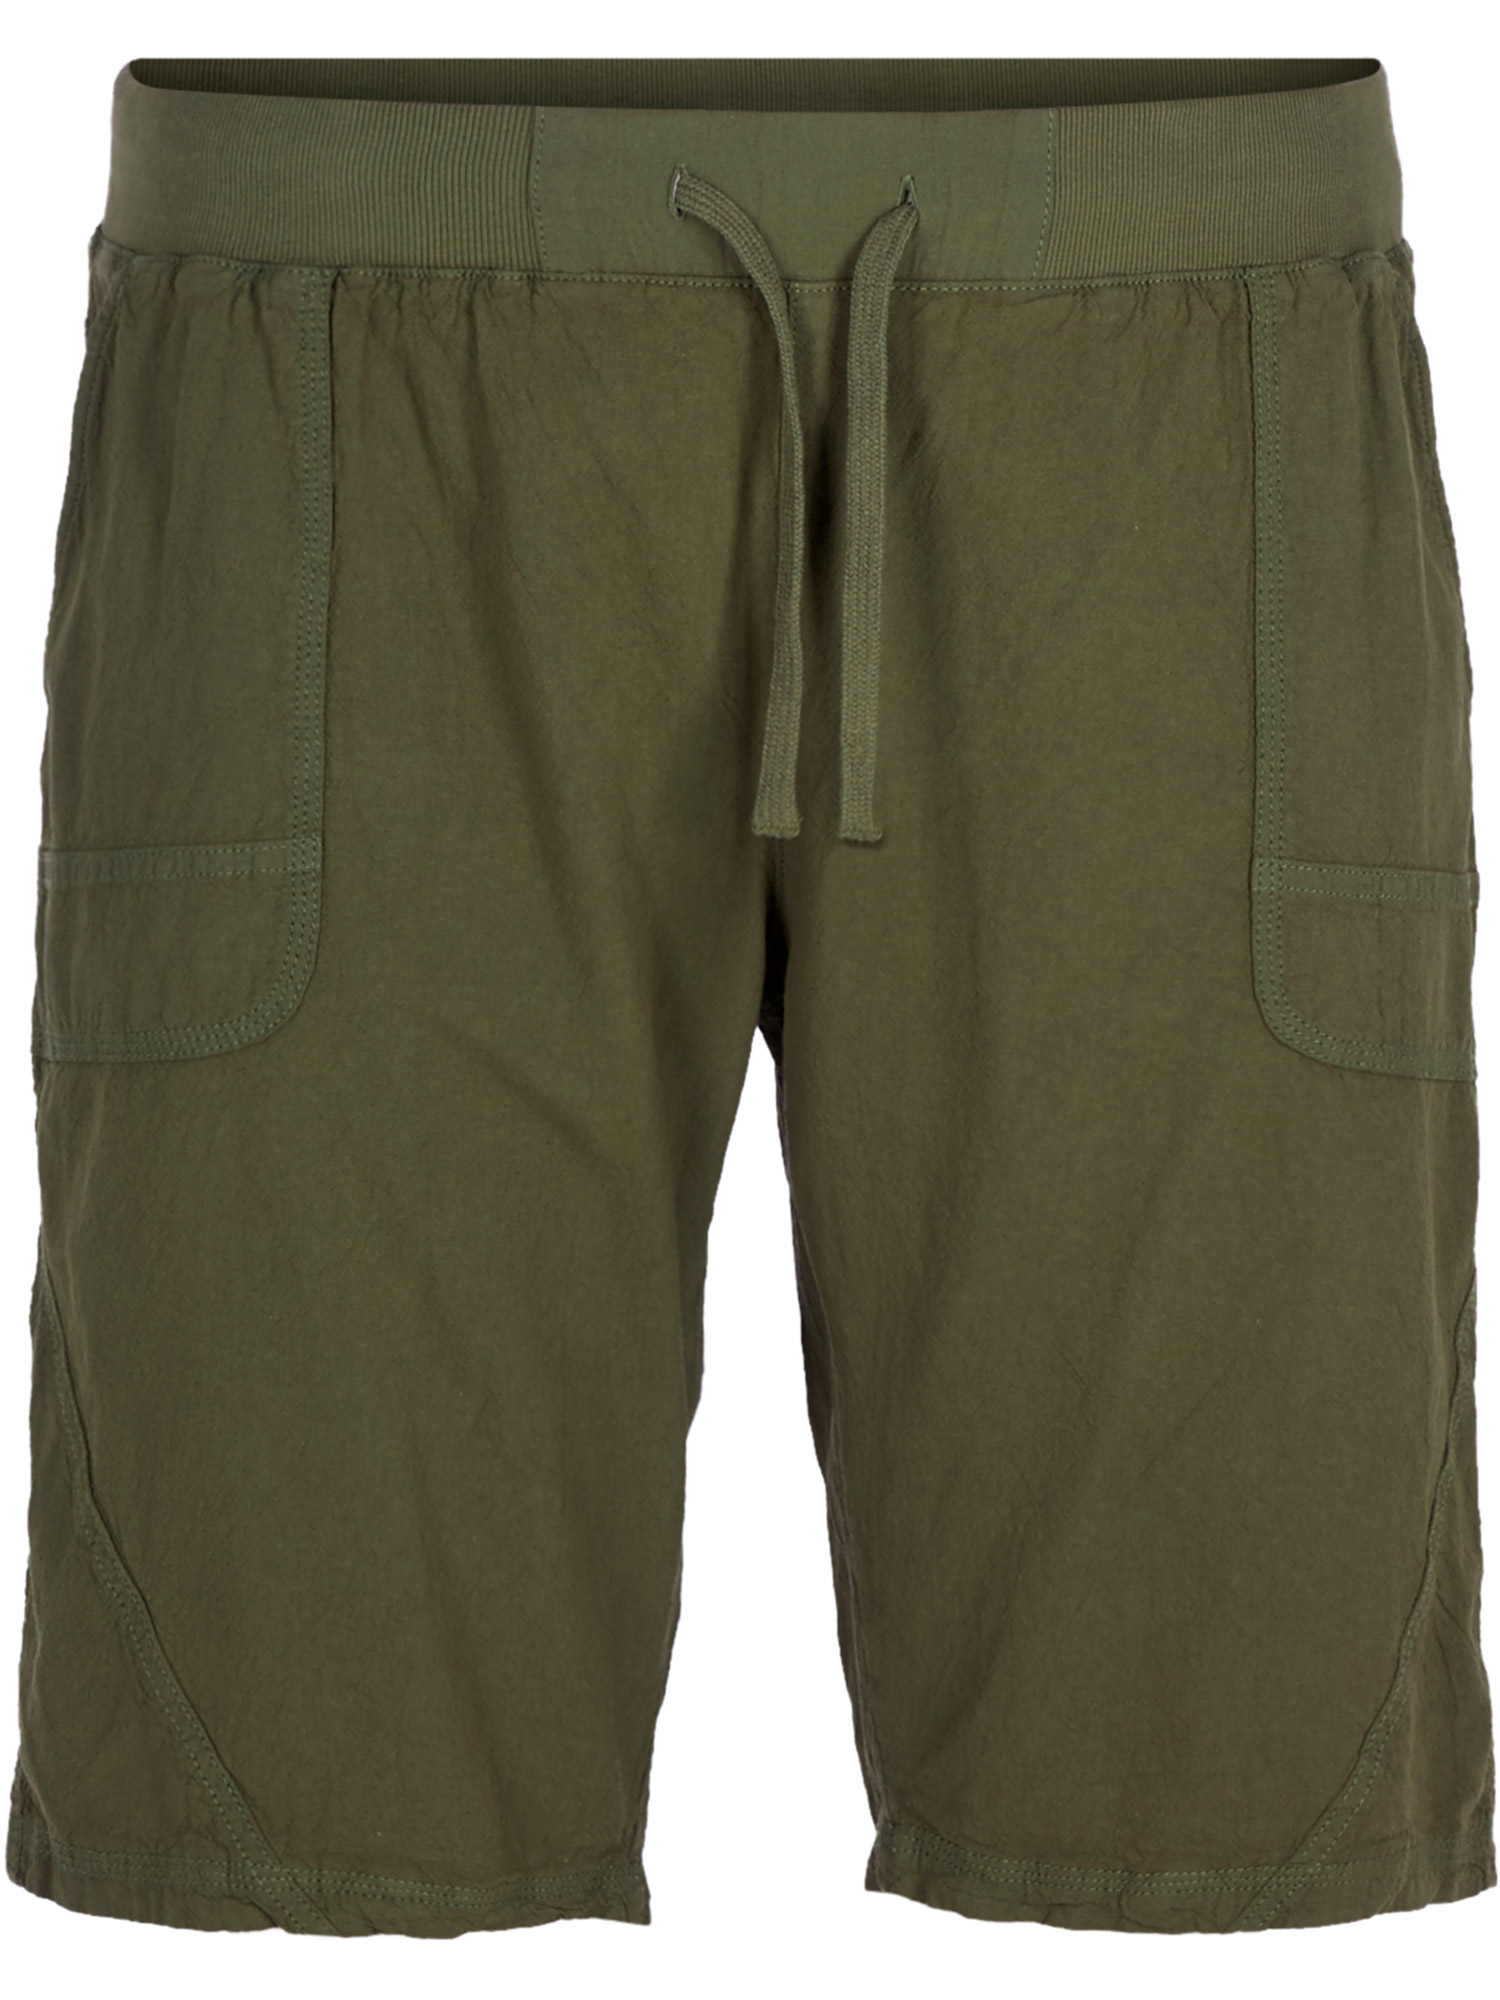 Olivengrønne shorts i bomull fra Zizzi